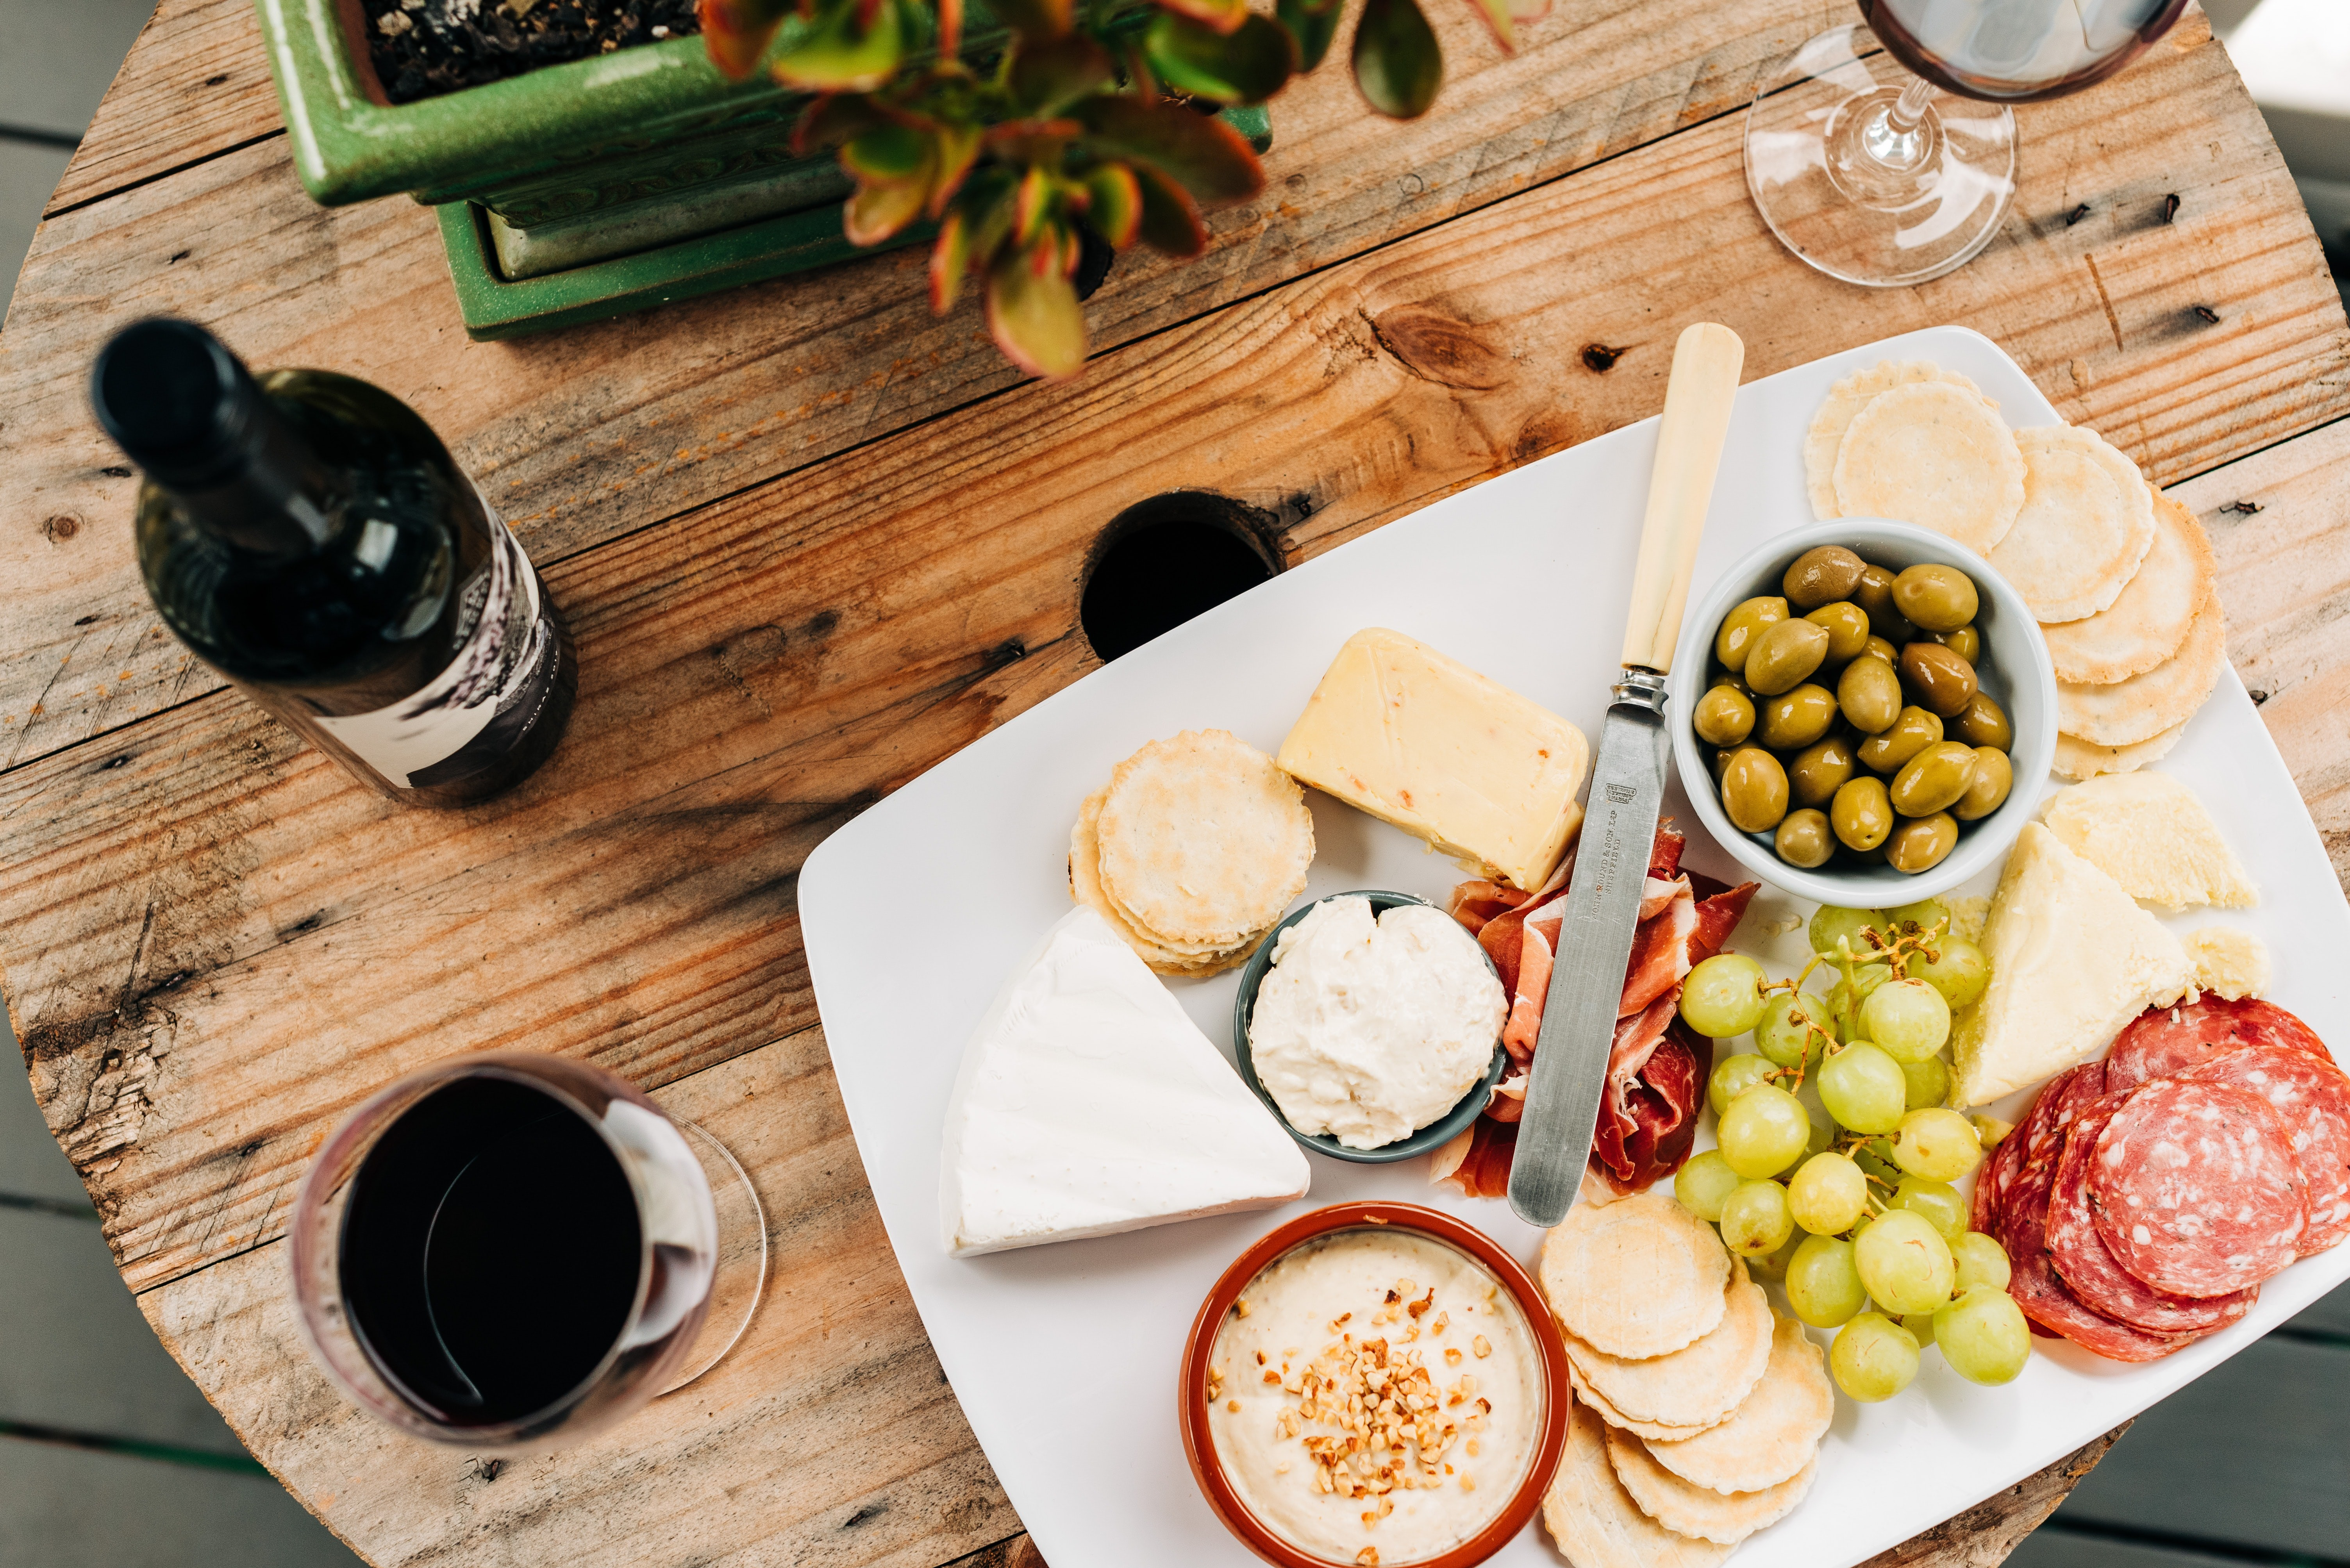 Вместе лучше: советы по сочетанию вина и сыра